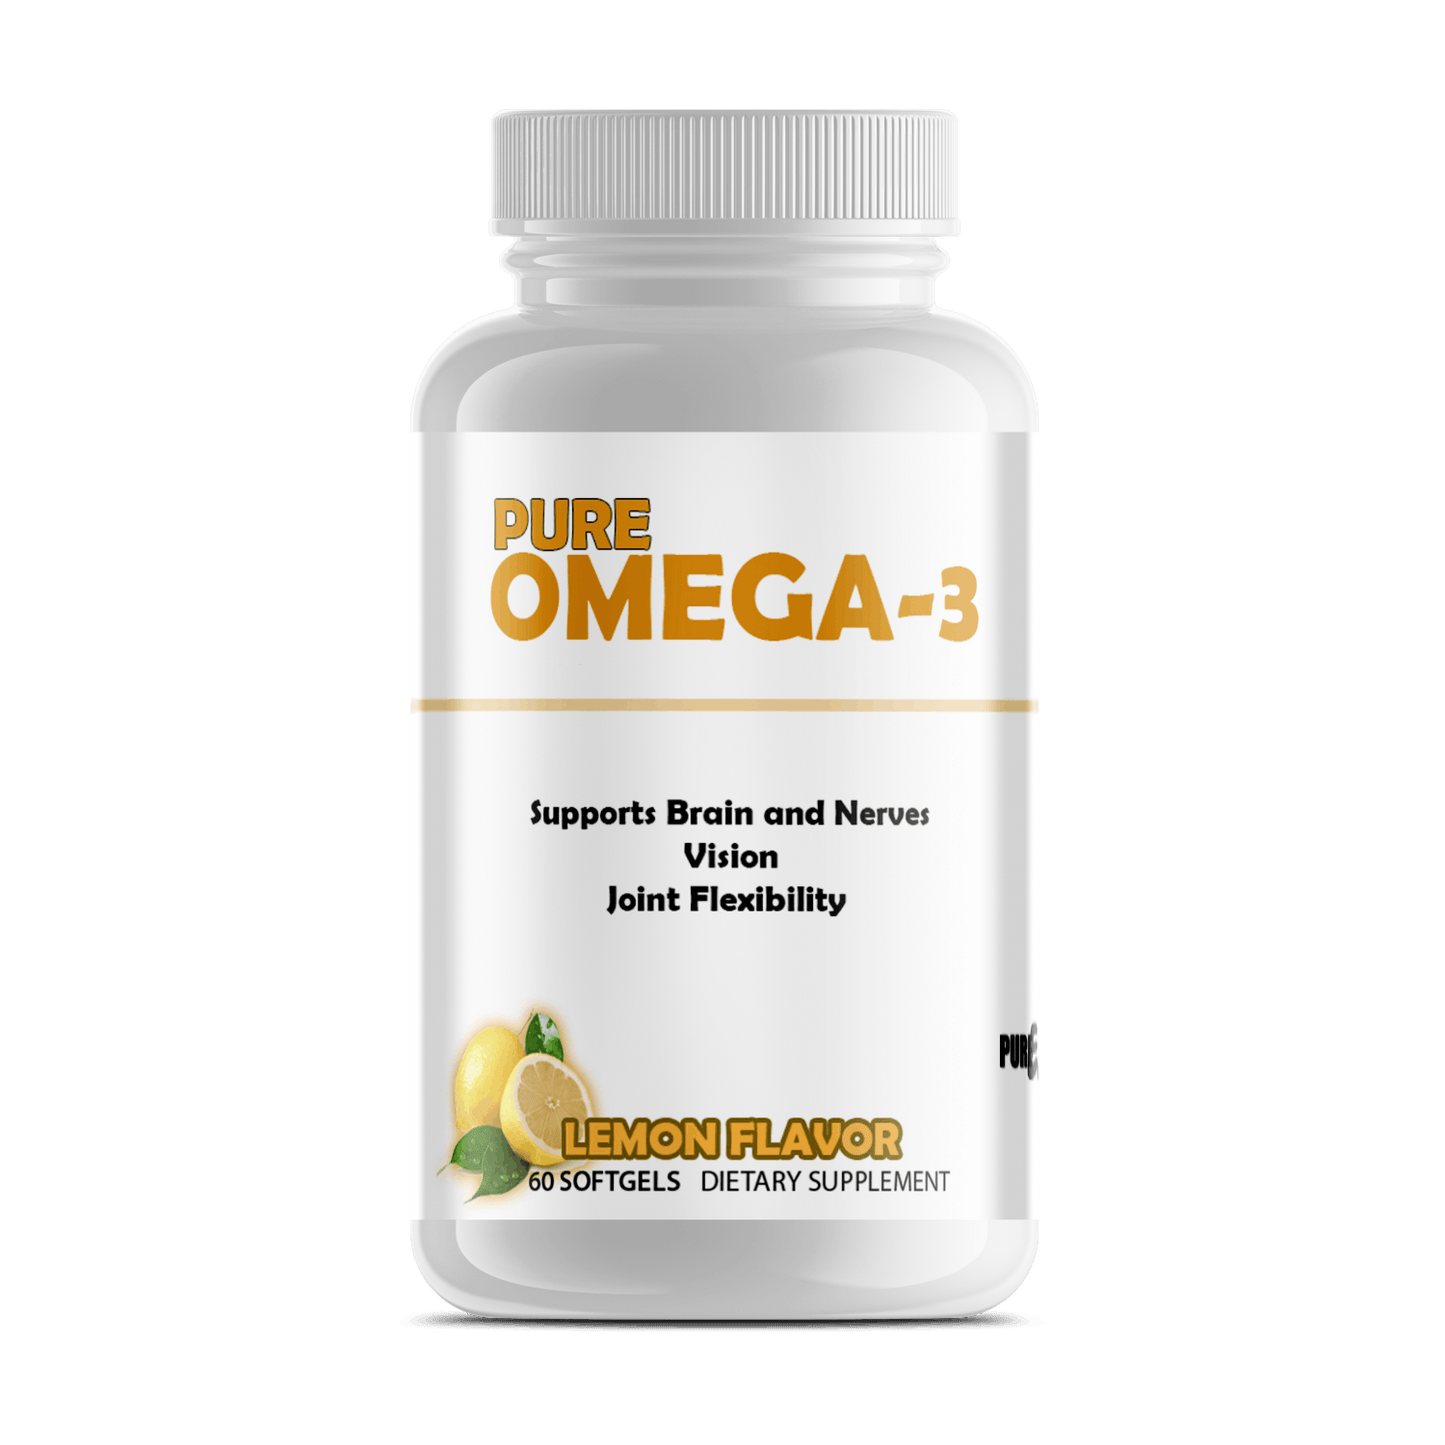 Pure Omega-3 